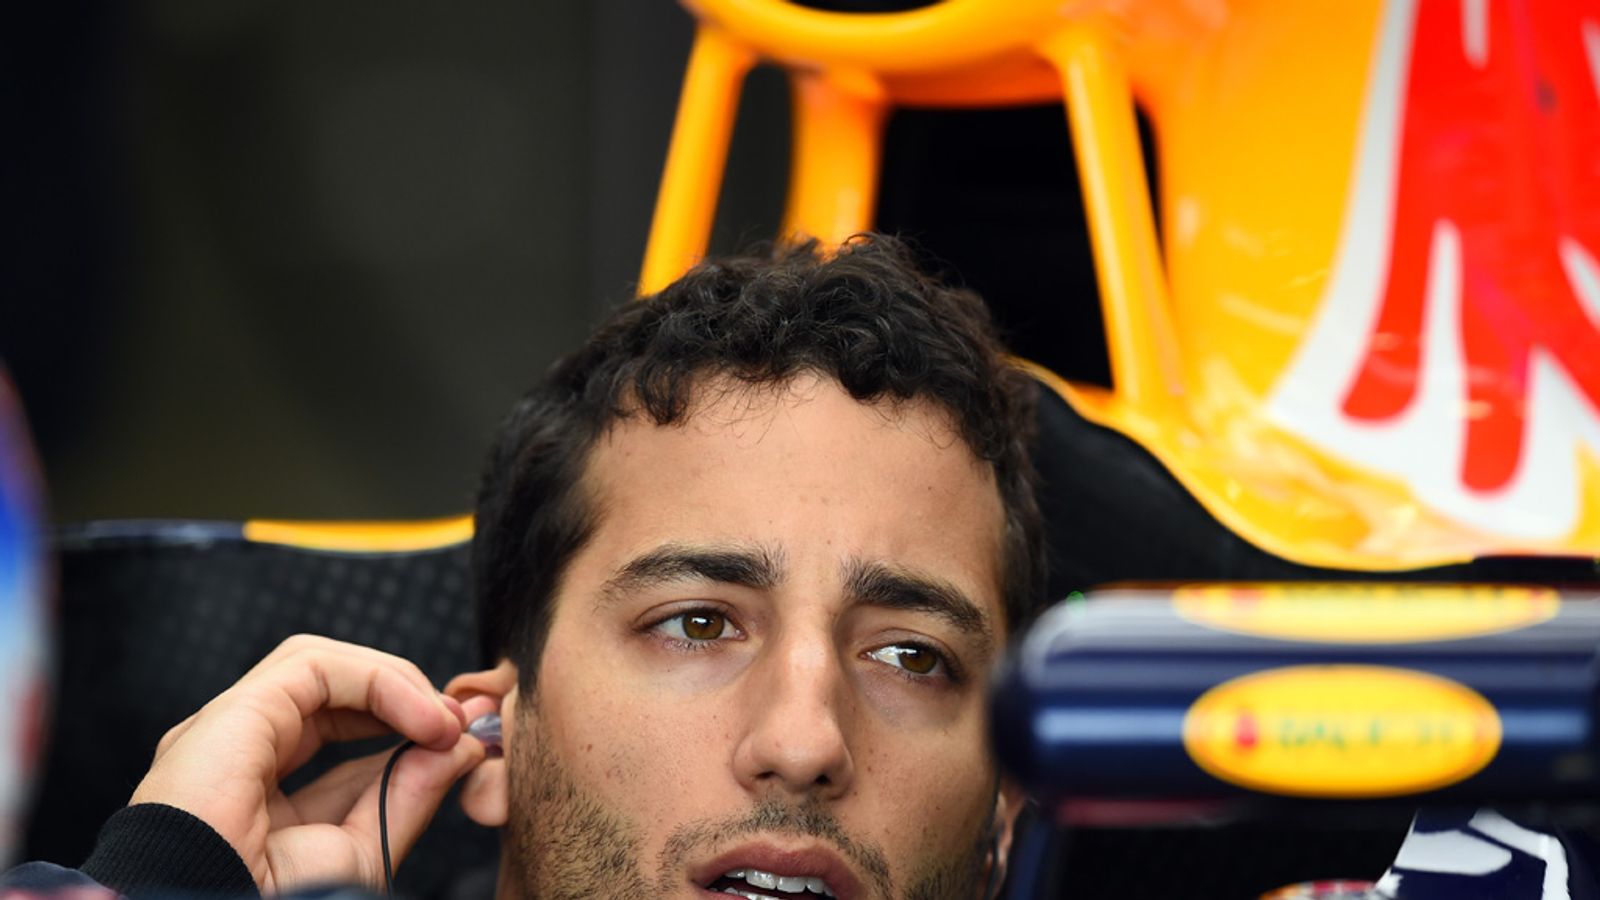 Daniel Ricciardo isn't expecting a repeat of last year’s Belgian GP win ...